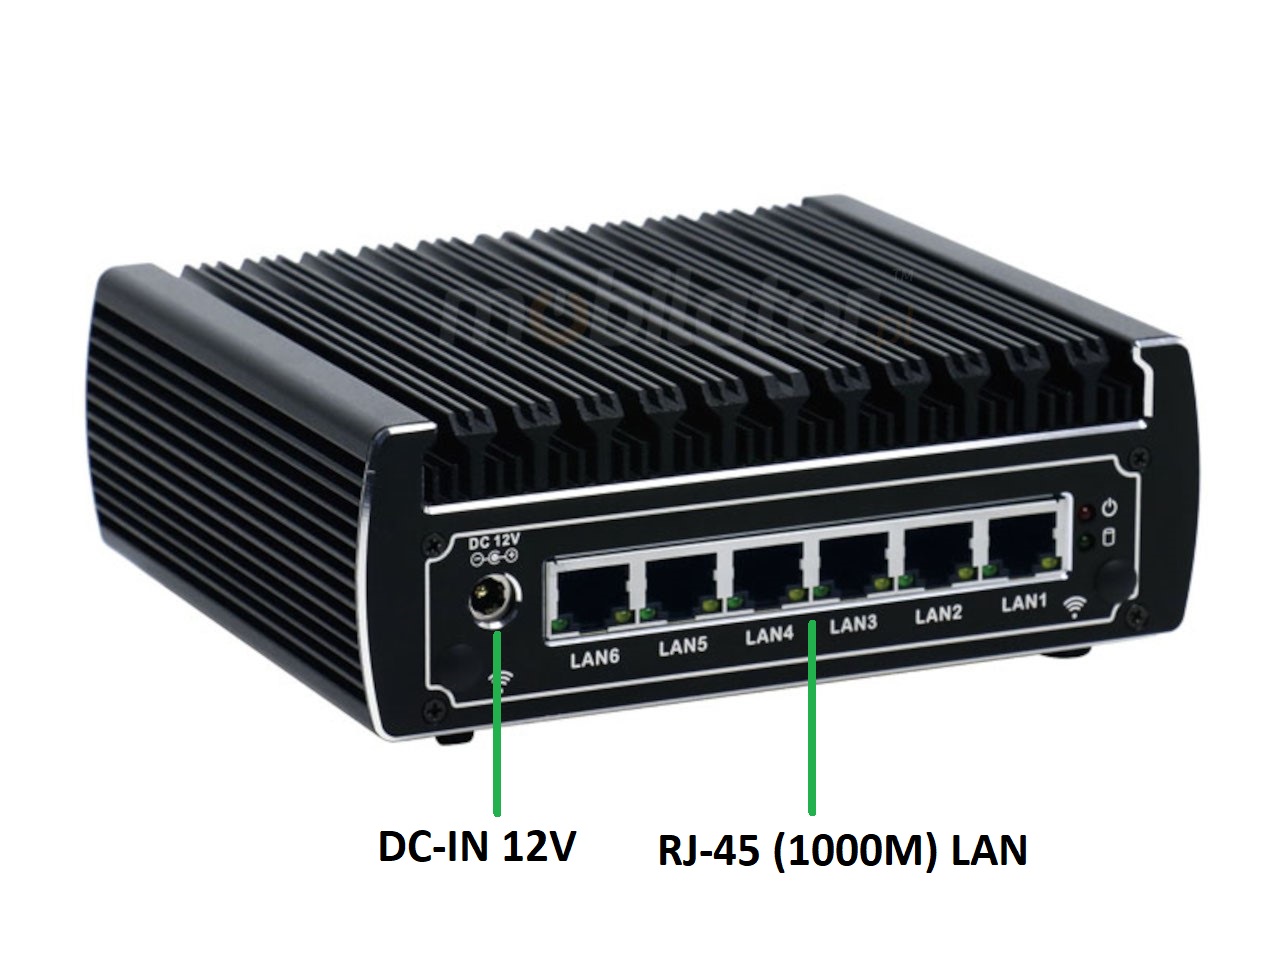   IBOX N133 v.15, zcza ty SSD DDR4 WIFI BLUETOOTH, przemysowy, may, szybki, niezawodny, fanless, industrial, small, LAN, INTEL i3